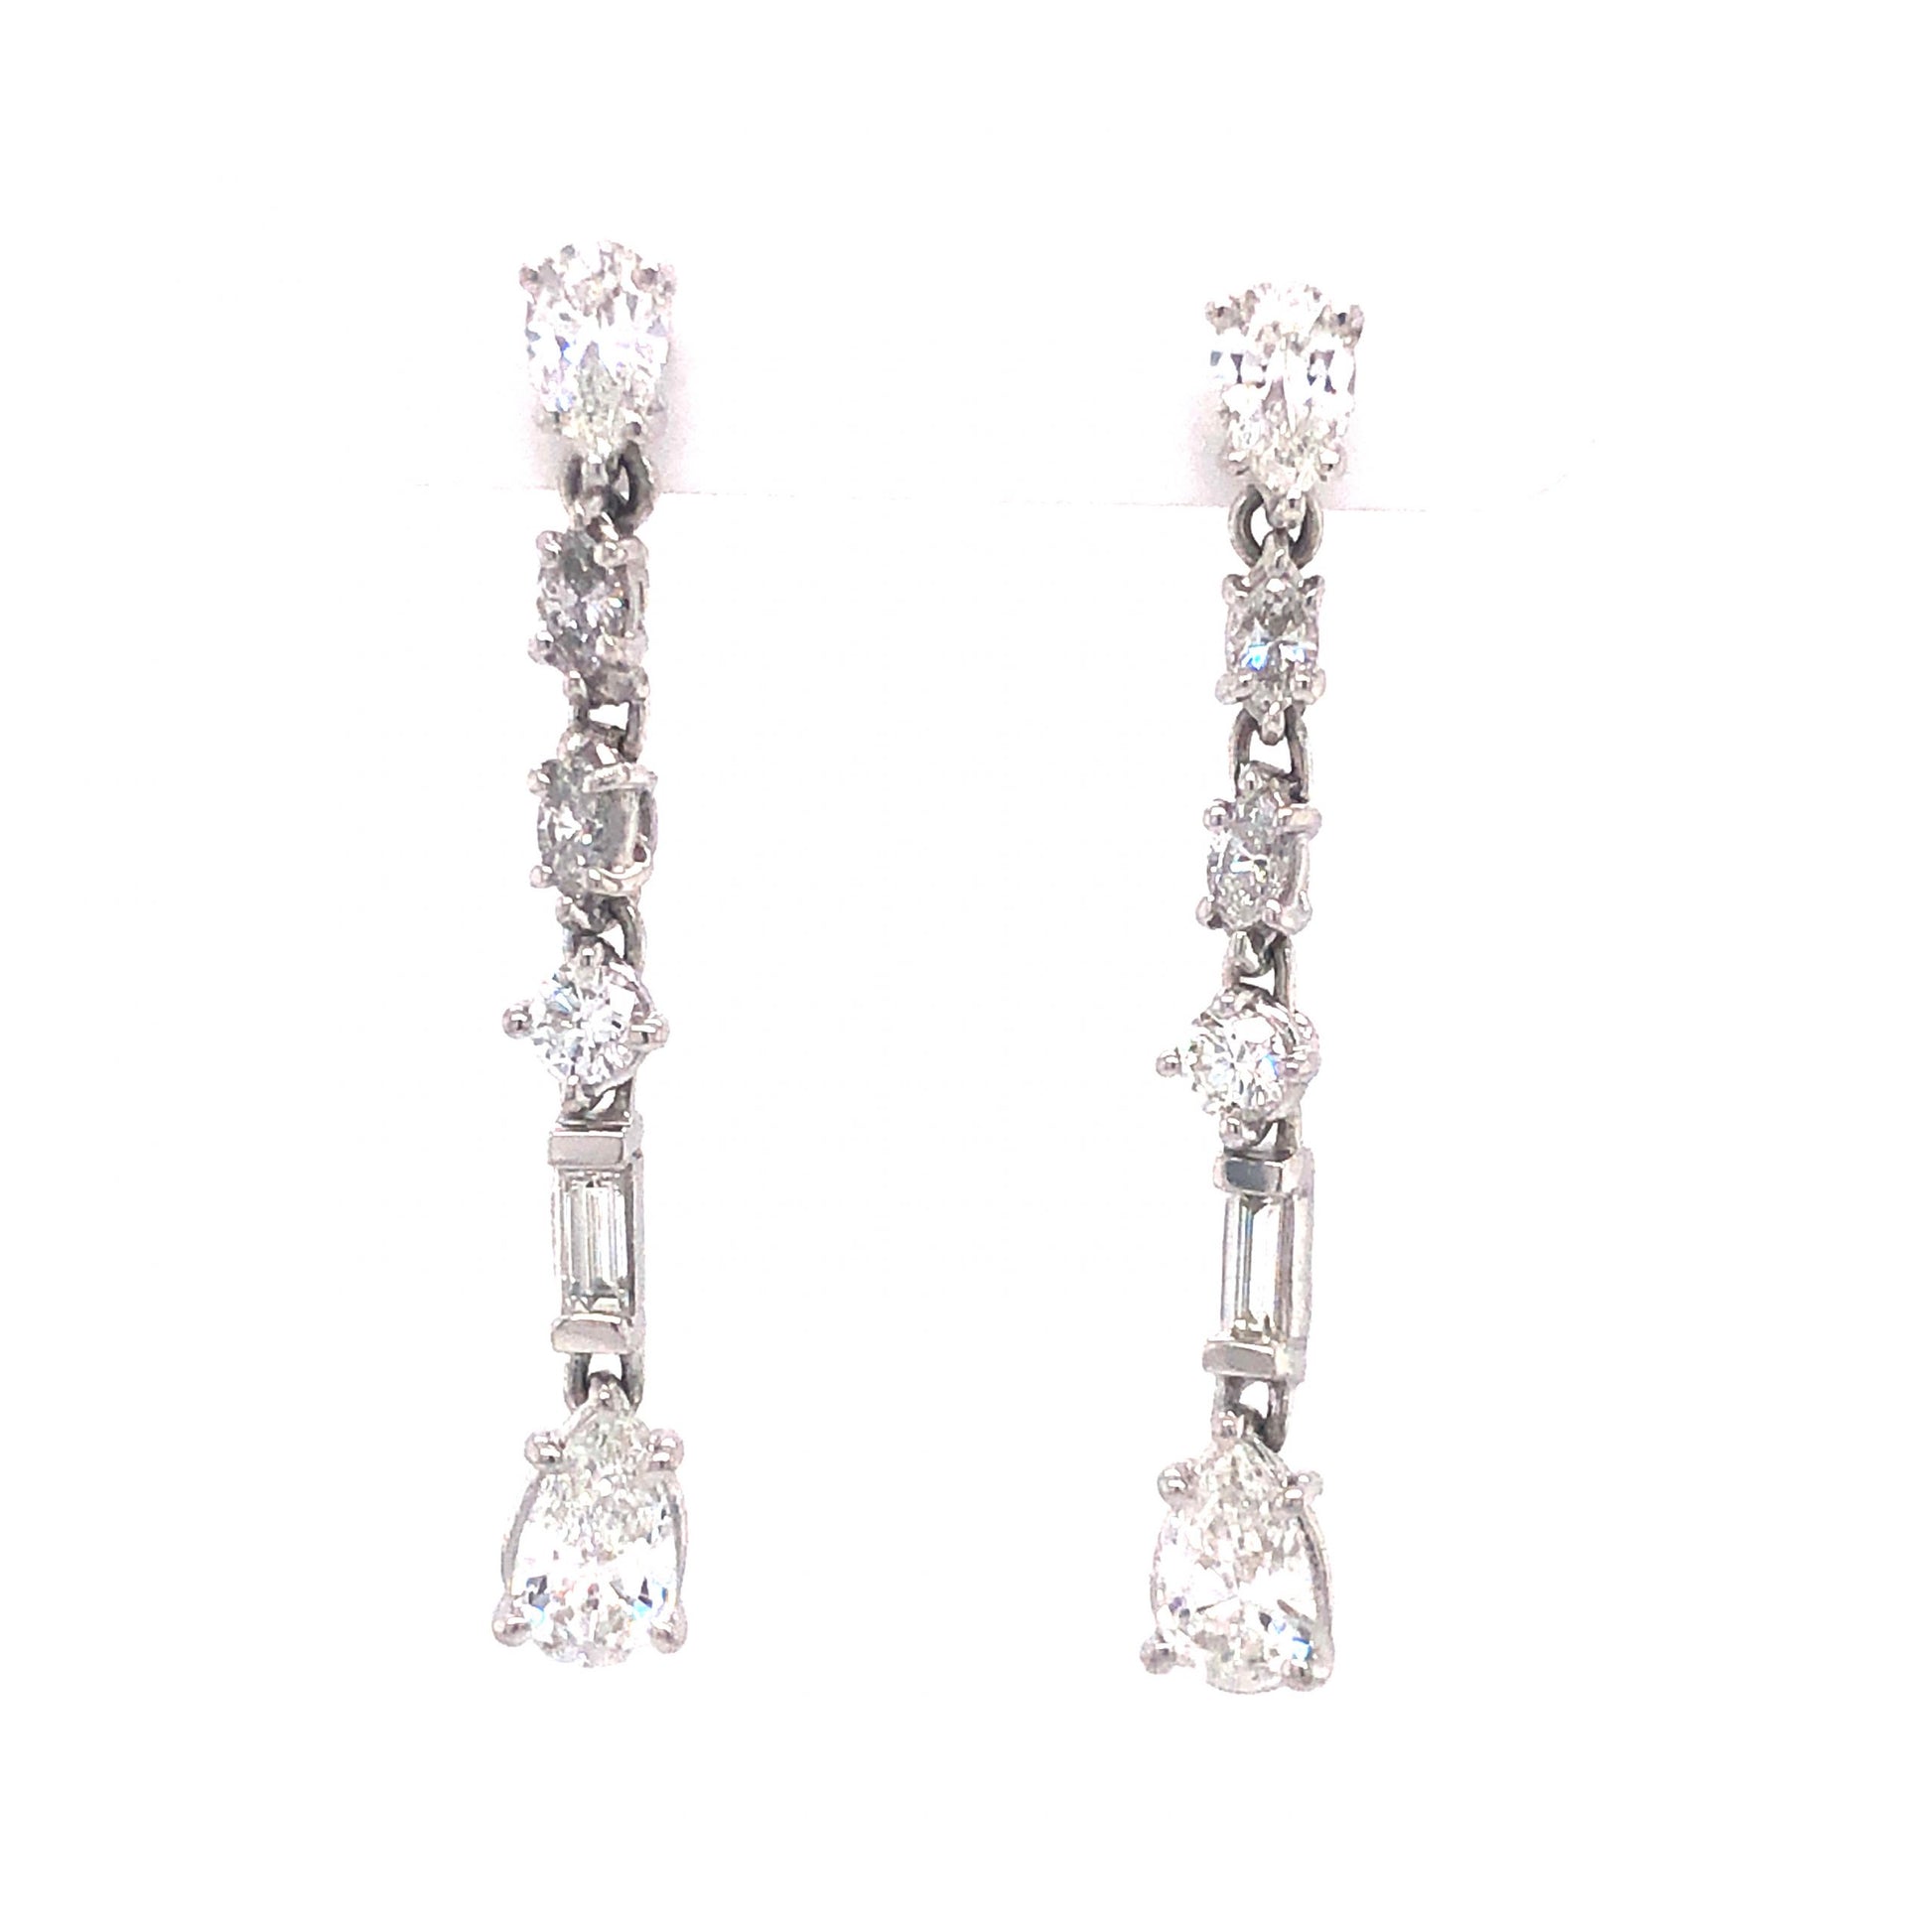 Diamond Drop Earrings in 18k White Gold